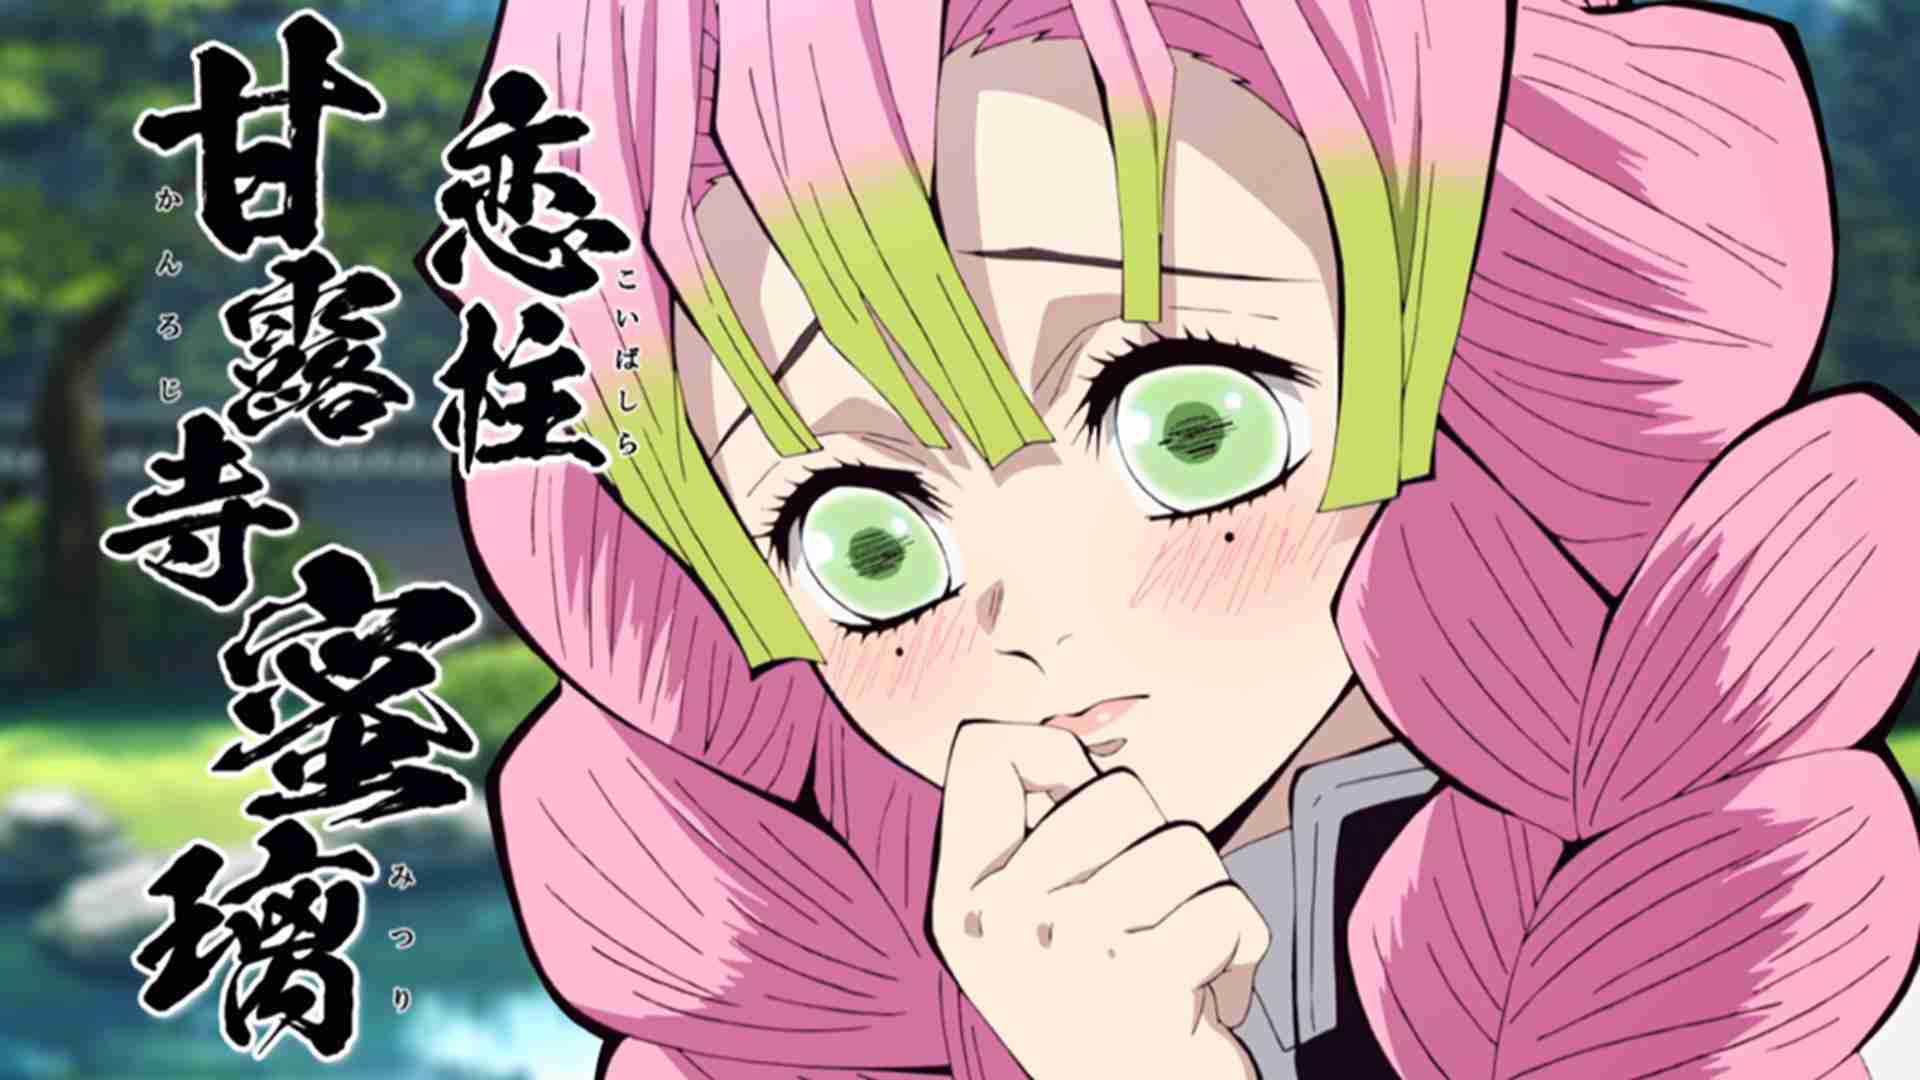 Mitsuri x Obanai in Tonikaku kawai Manga☆ - Demon slayer - Quora